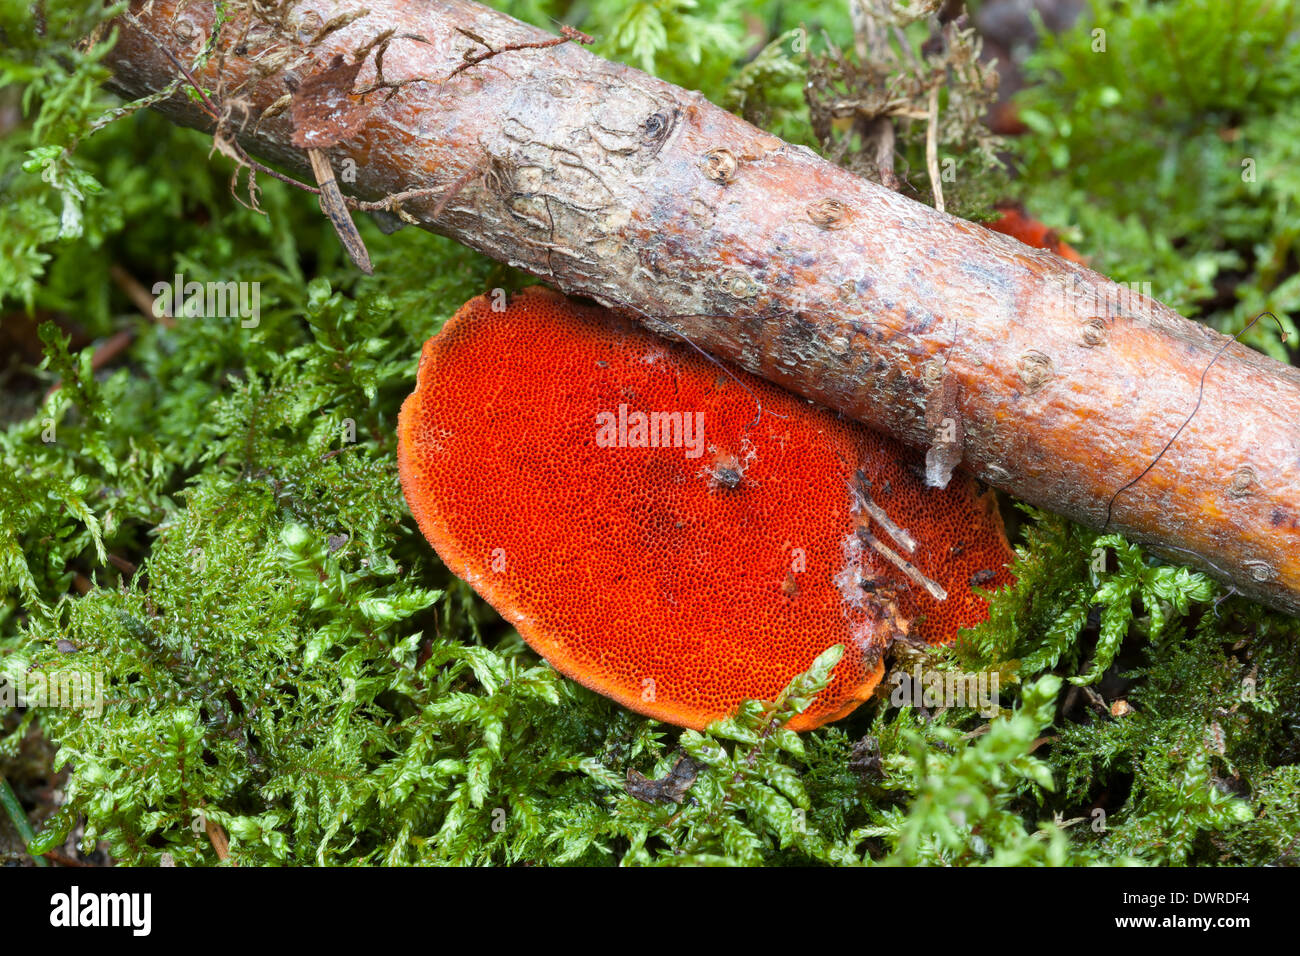 Pycnoporus cinnabarinus mushroom Stock Photo